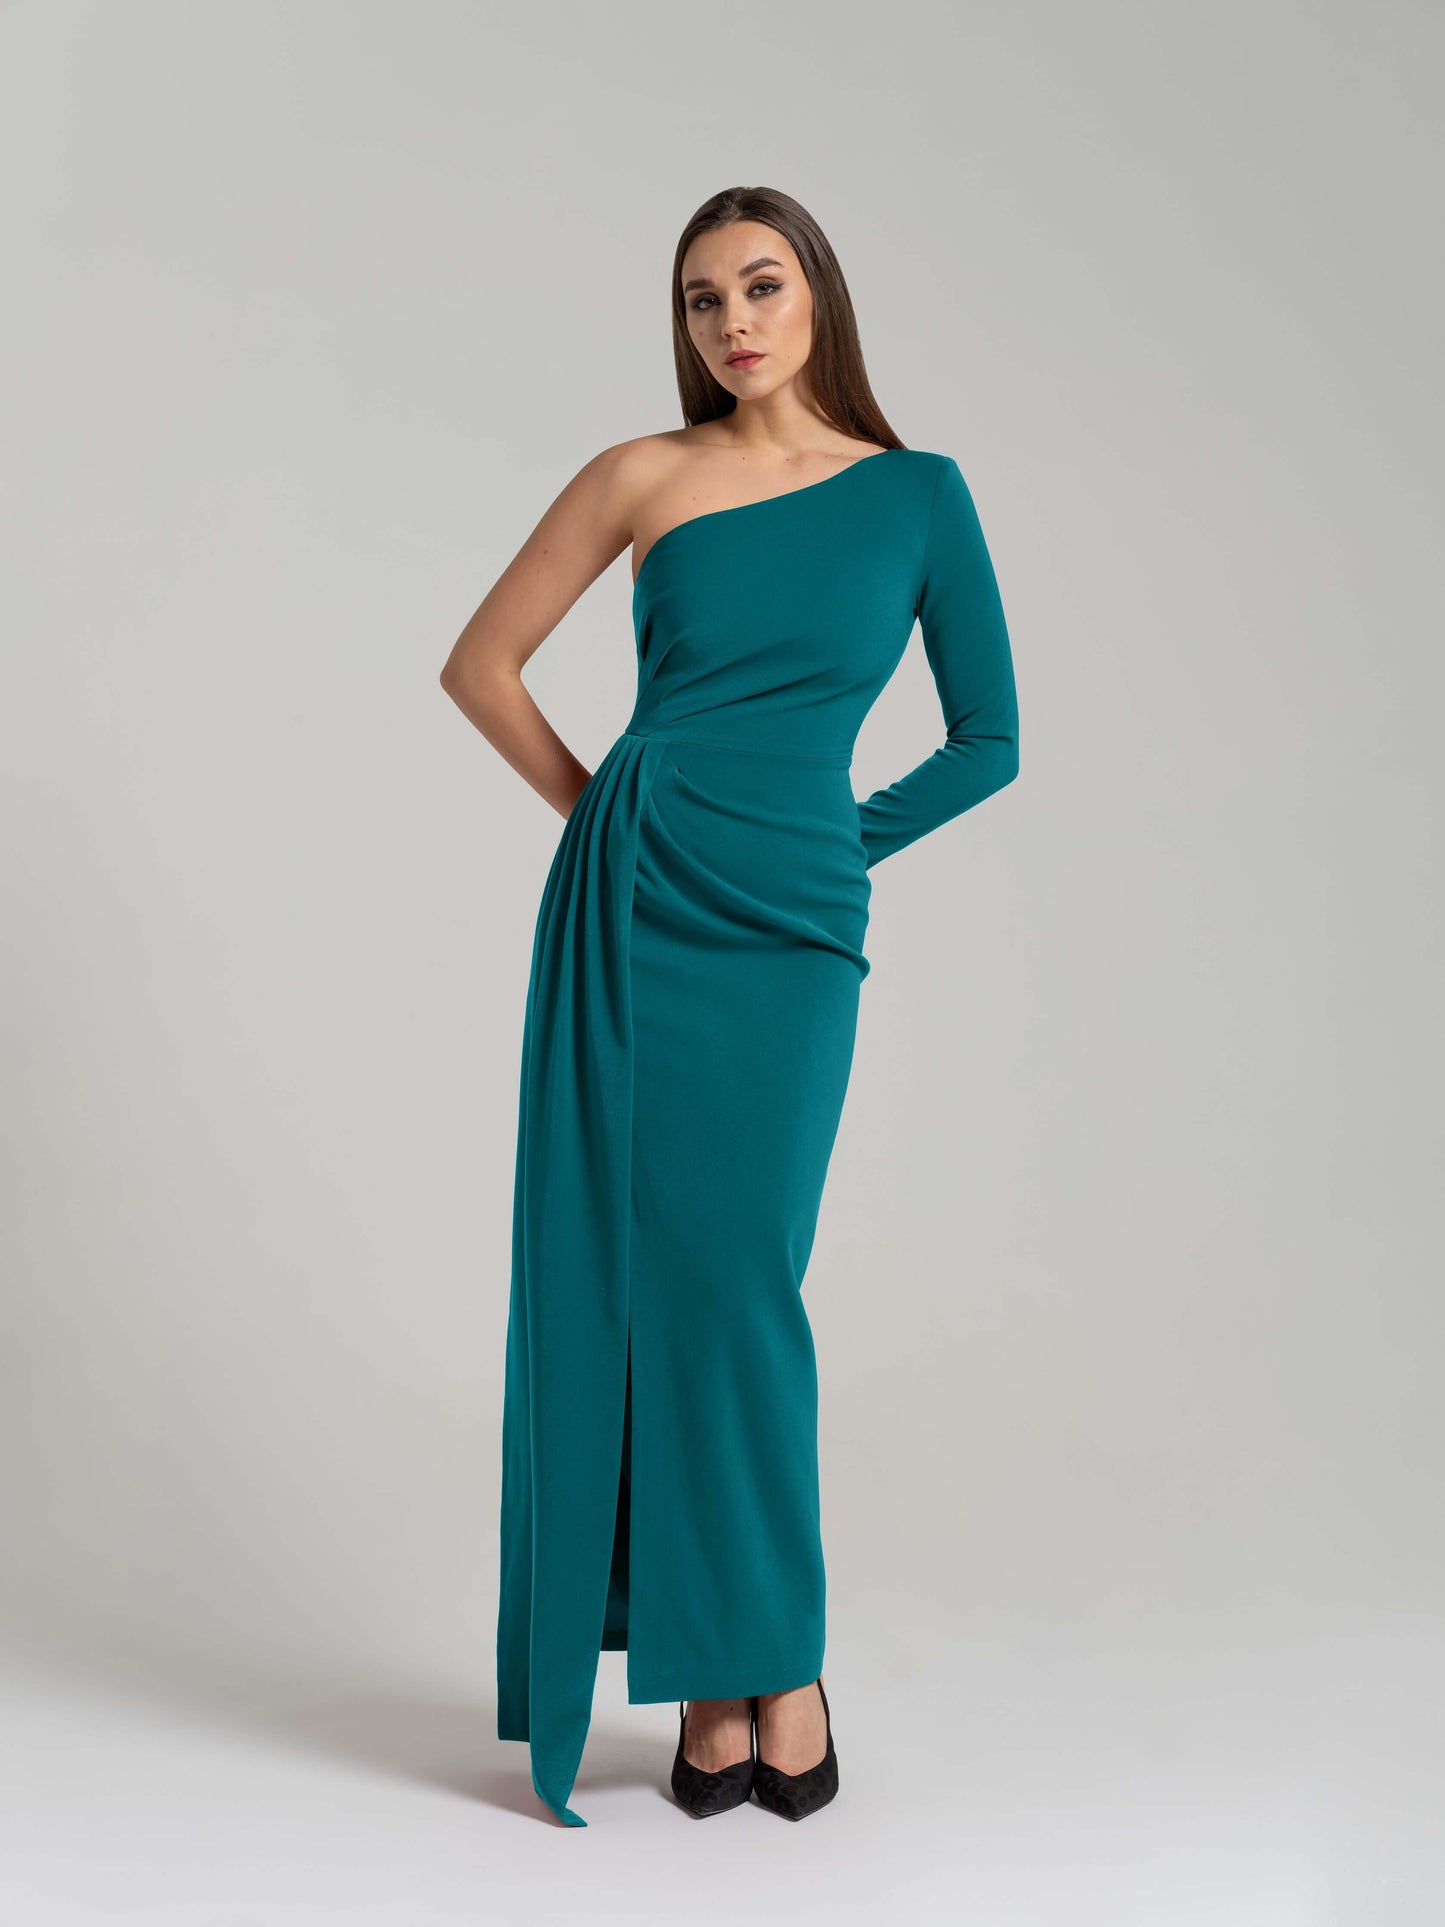 Iconic Glamour Draped Long Dress - Turquoise